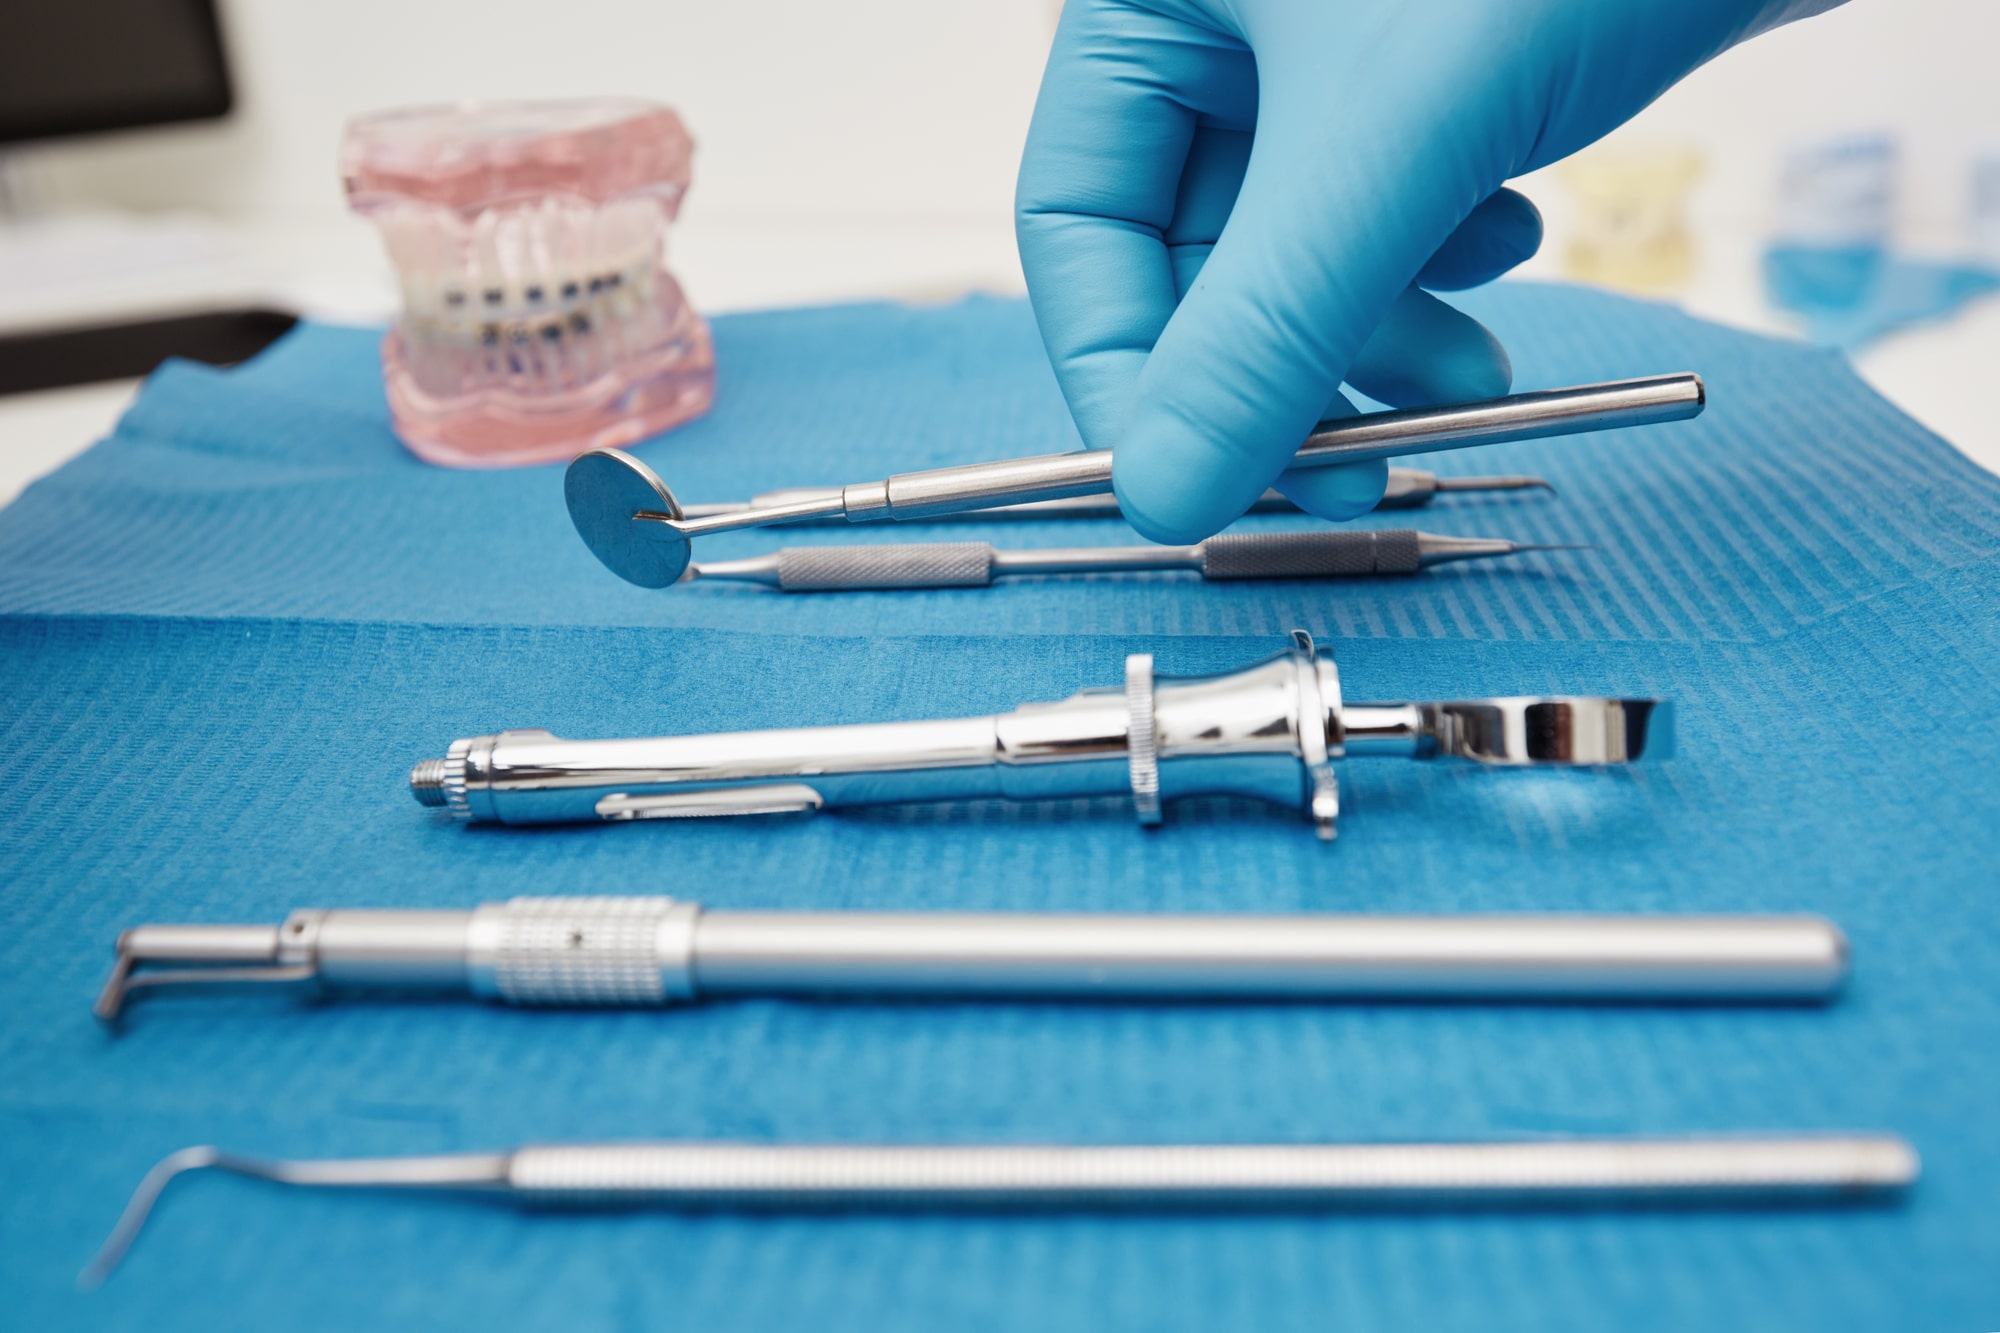 set-metal-medical-equipment-tools-dental-care-min